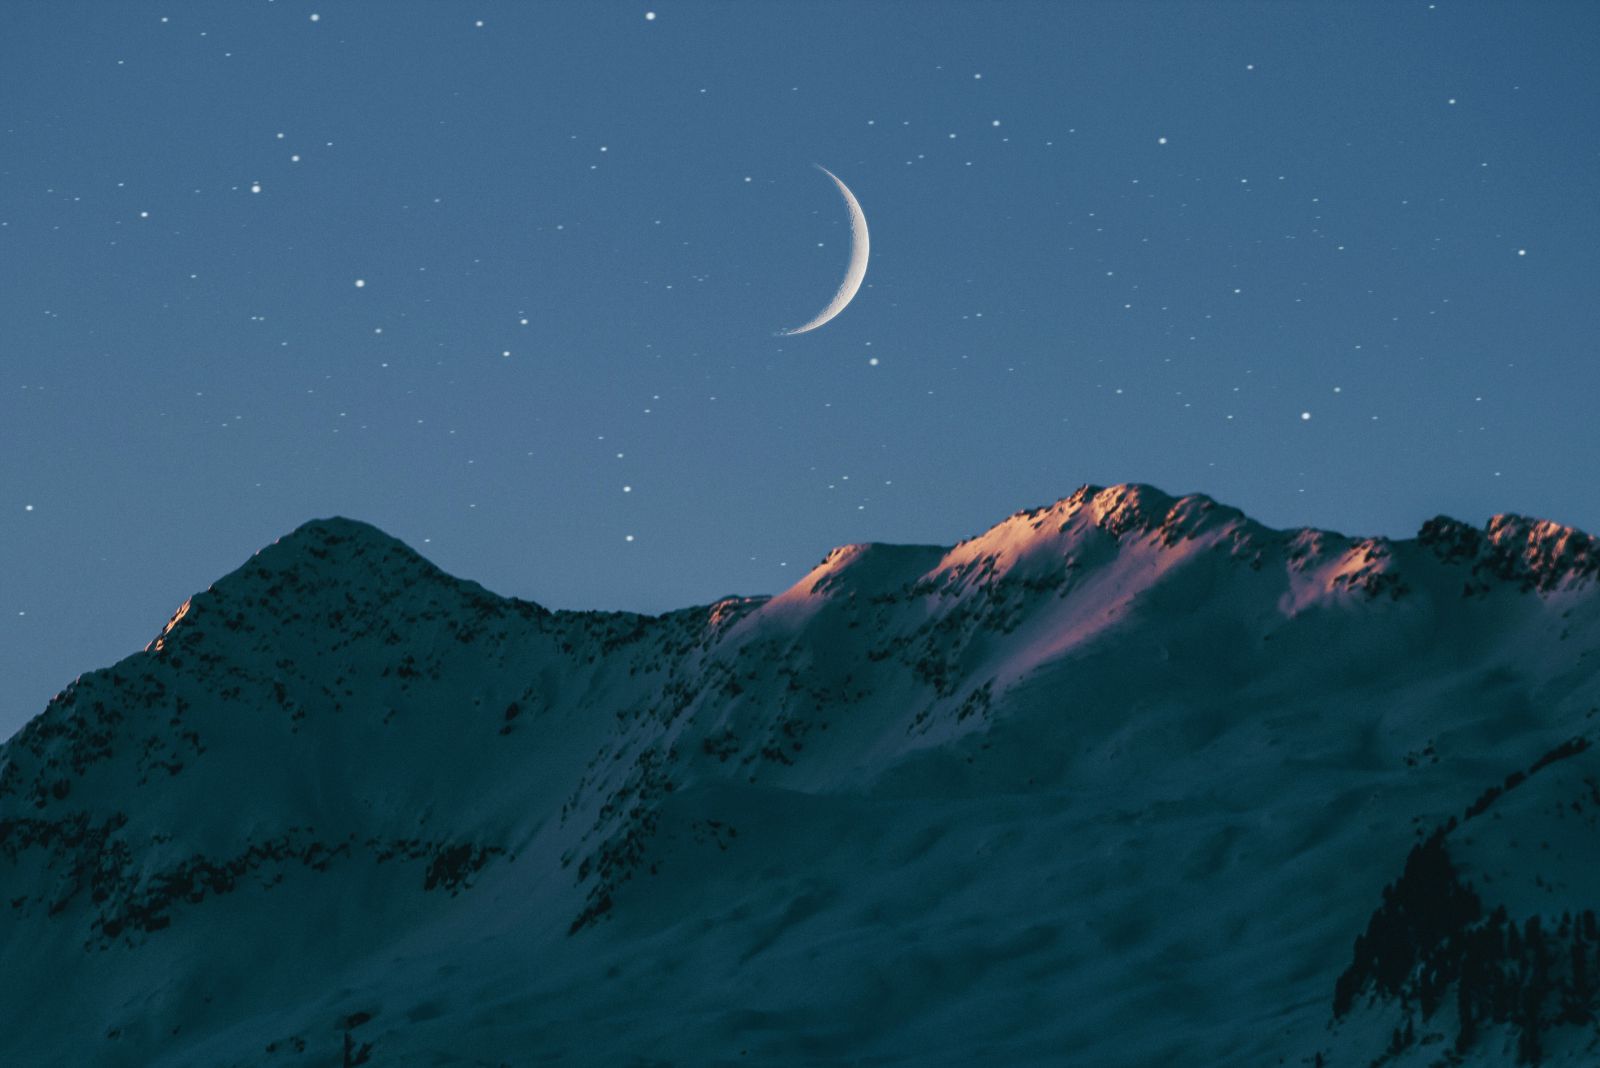 Lua minguante vista à noite, sobre paisagem montanhosa.